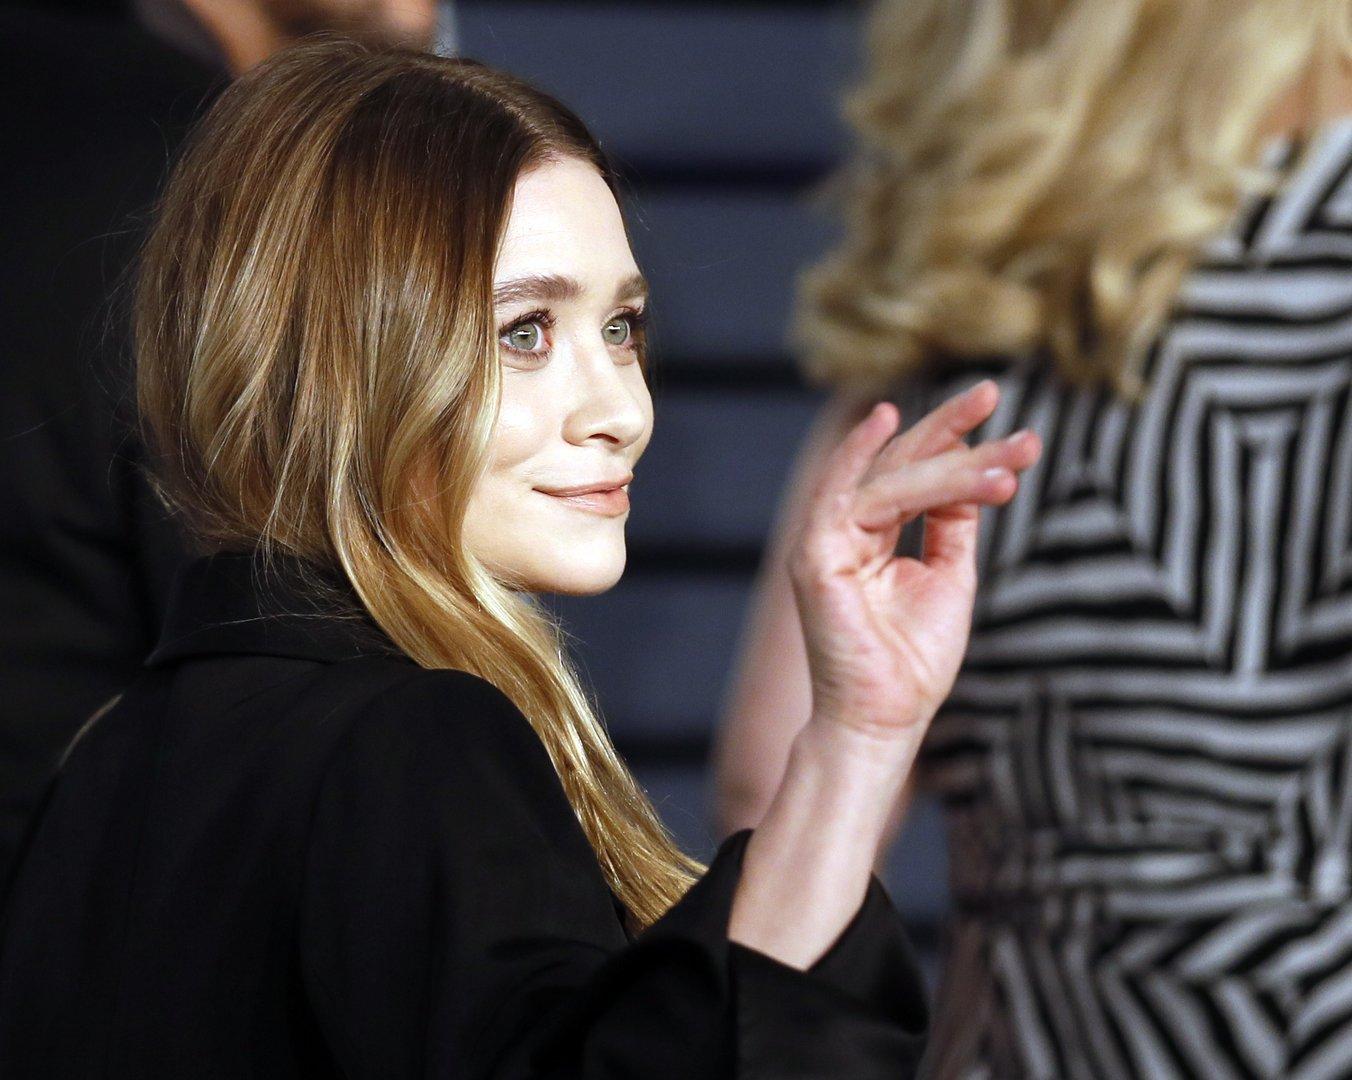 Wieder happy: Mary-Kate Olsen nach Scheidung bei Date gesichtet